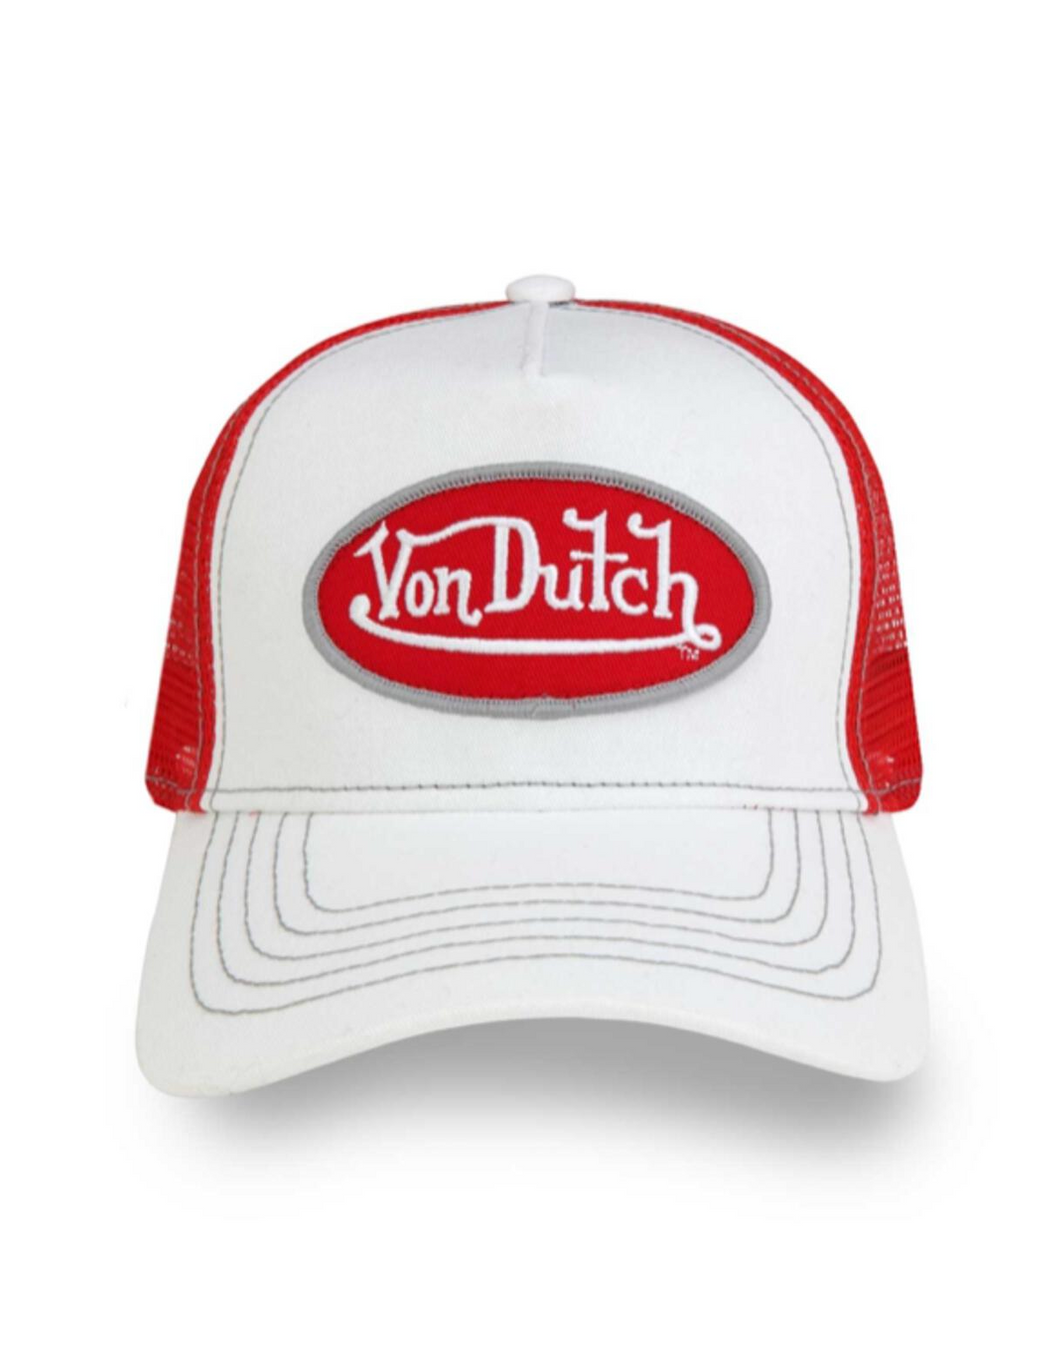 VON DUTCH CLASSIC WHITE AND RED TRUCKER HAT